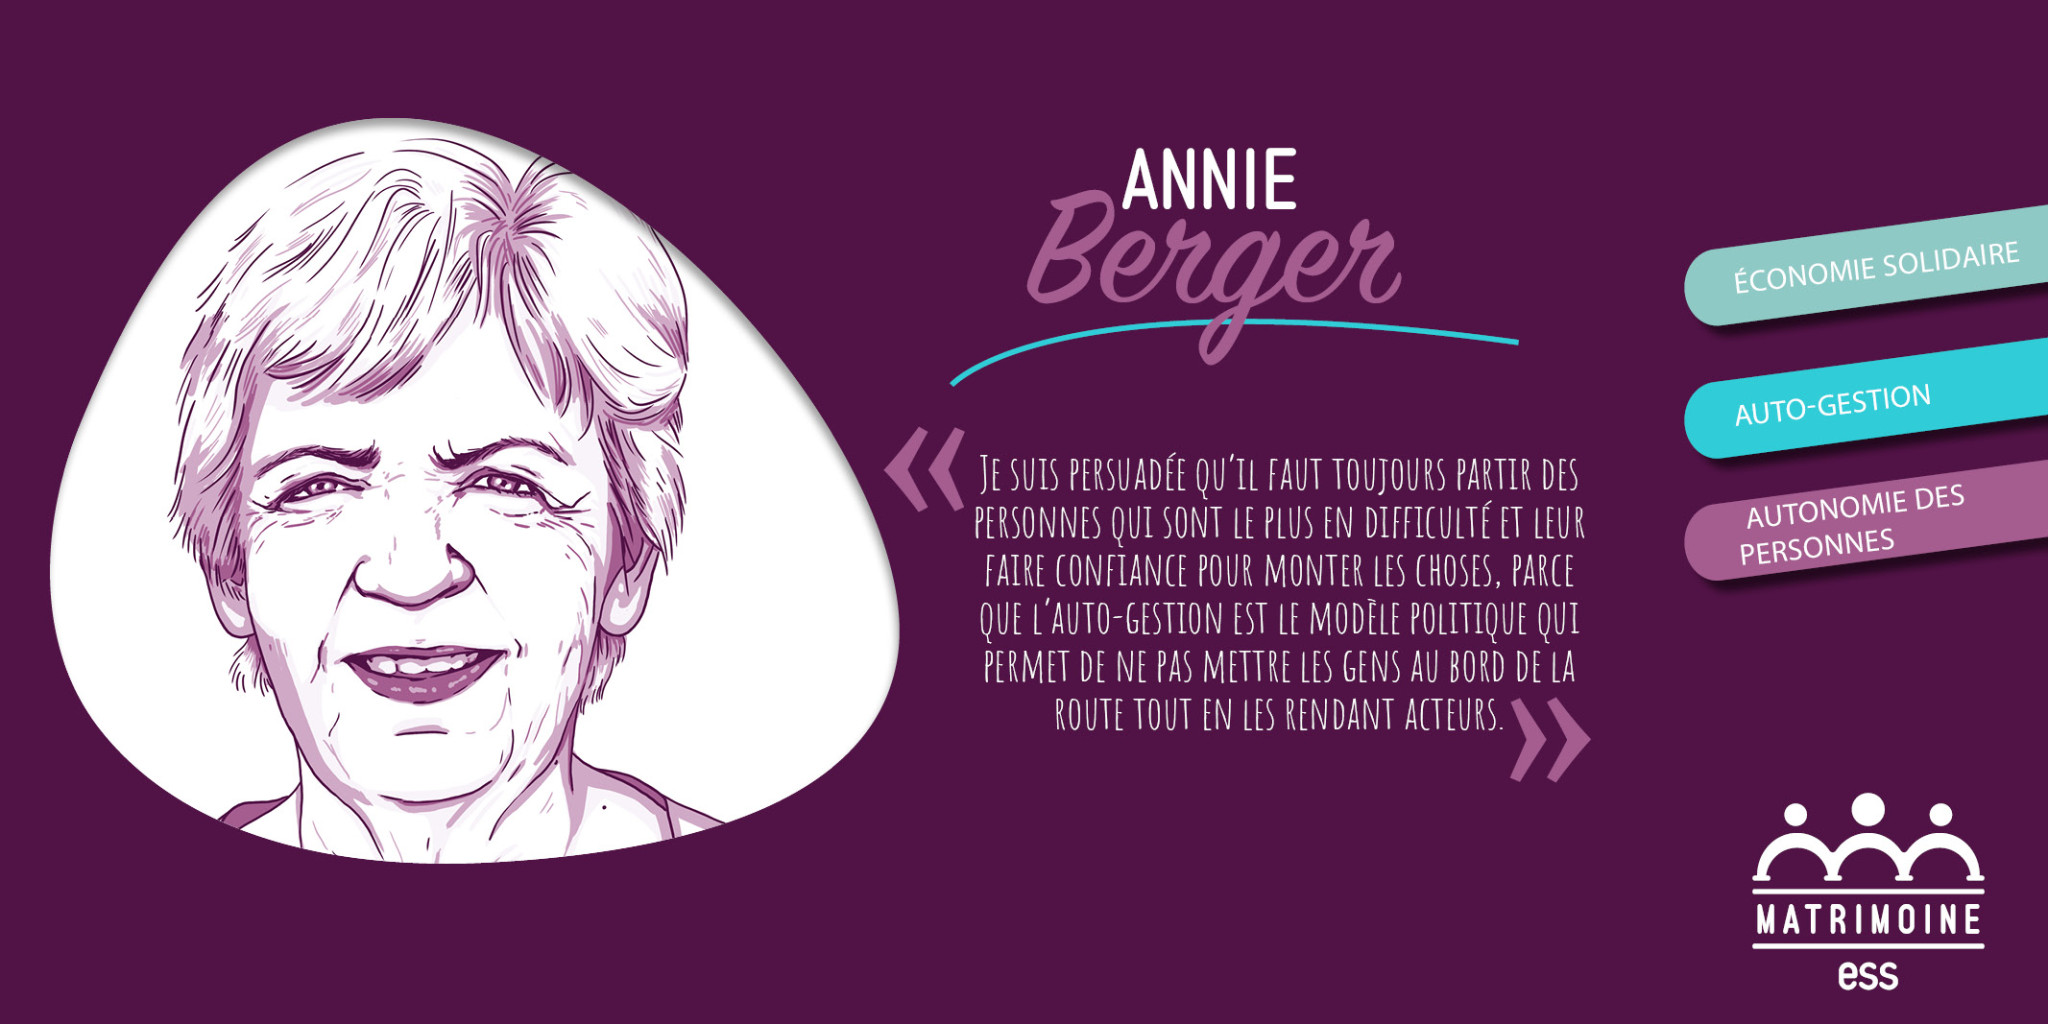 Le portrait d’Annie Berger, militante de l’économie solidaire